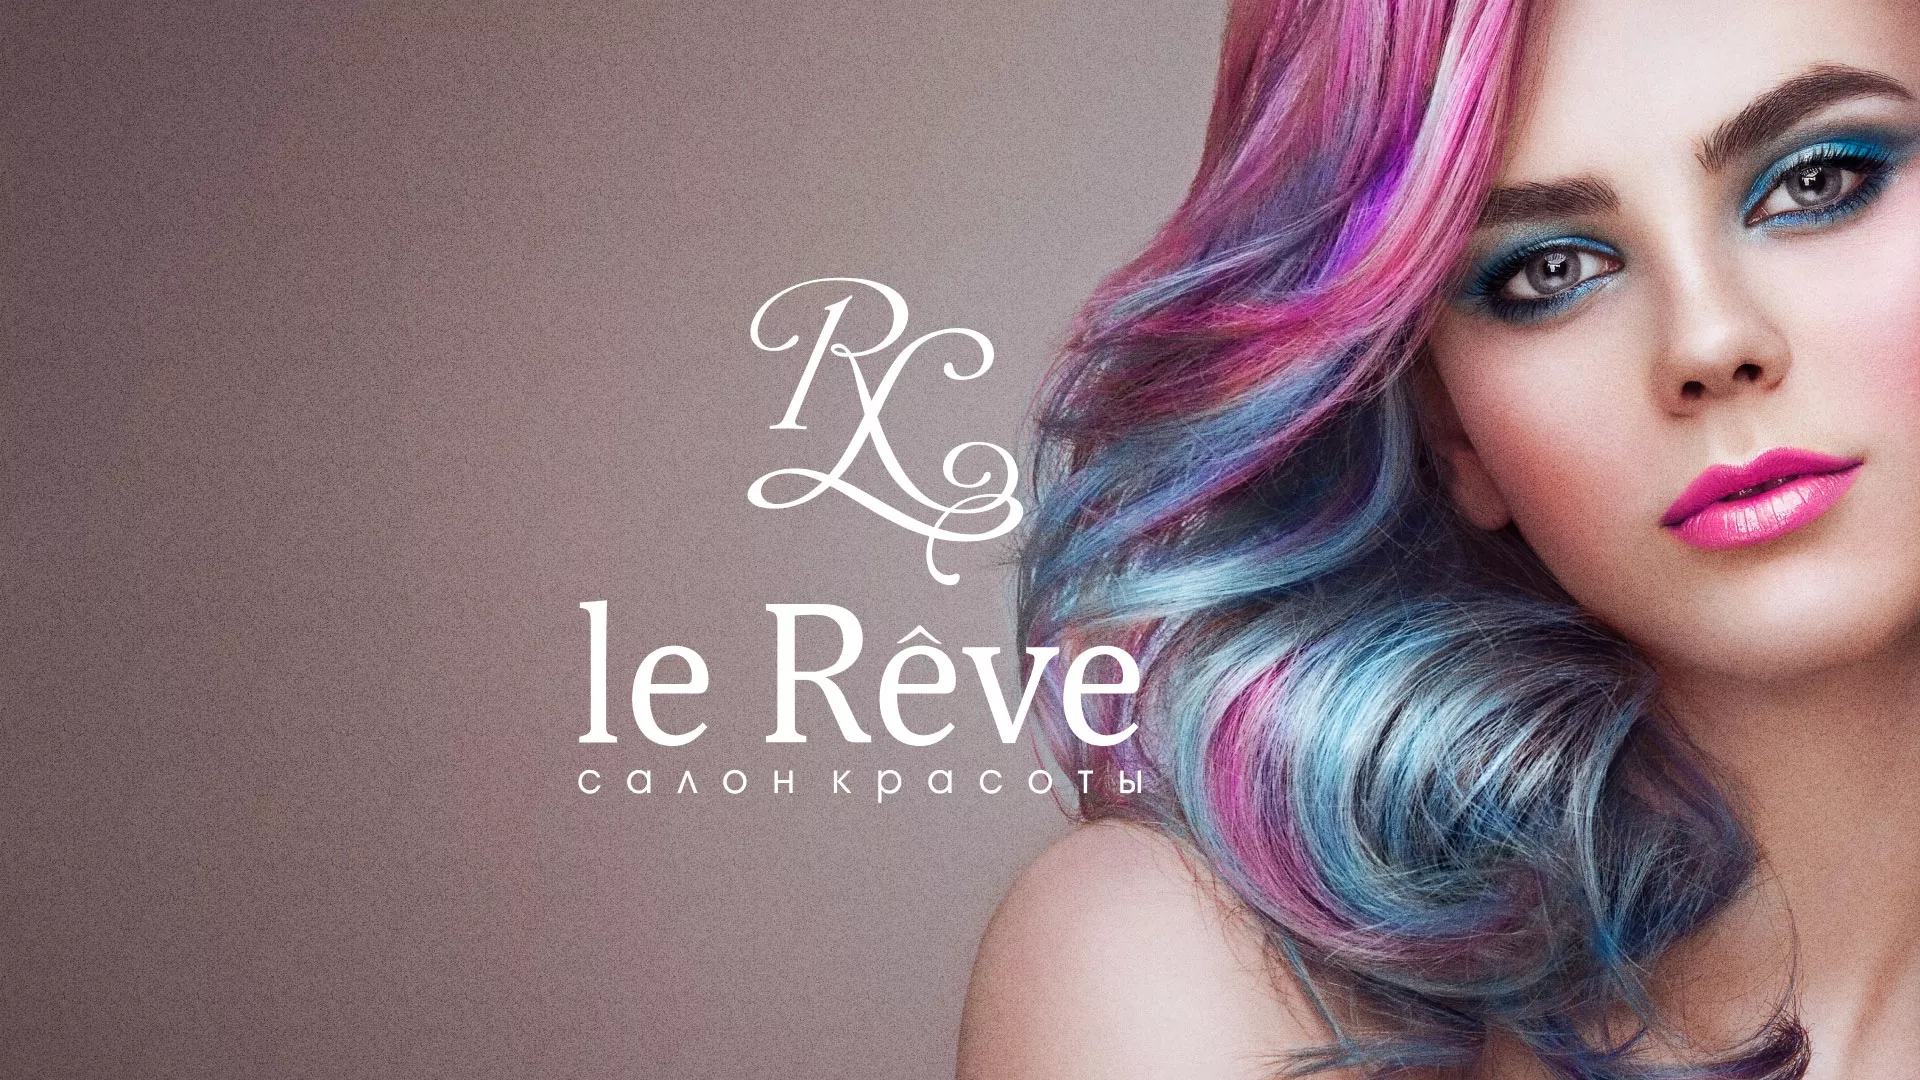 Создание сайта для салона красоты «Le Reve» в Владивостоке